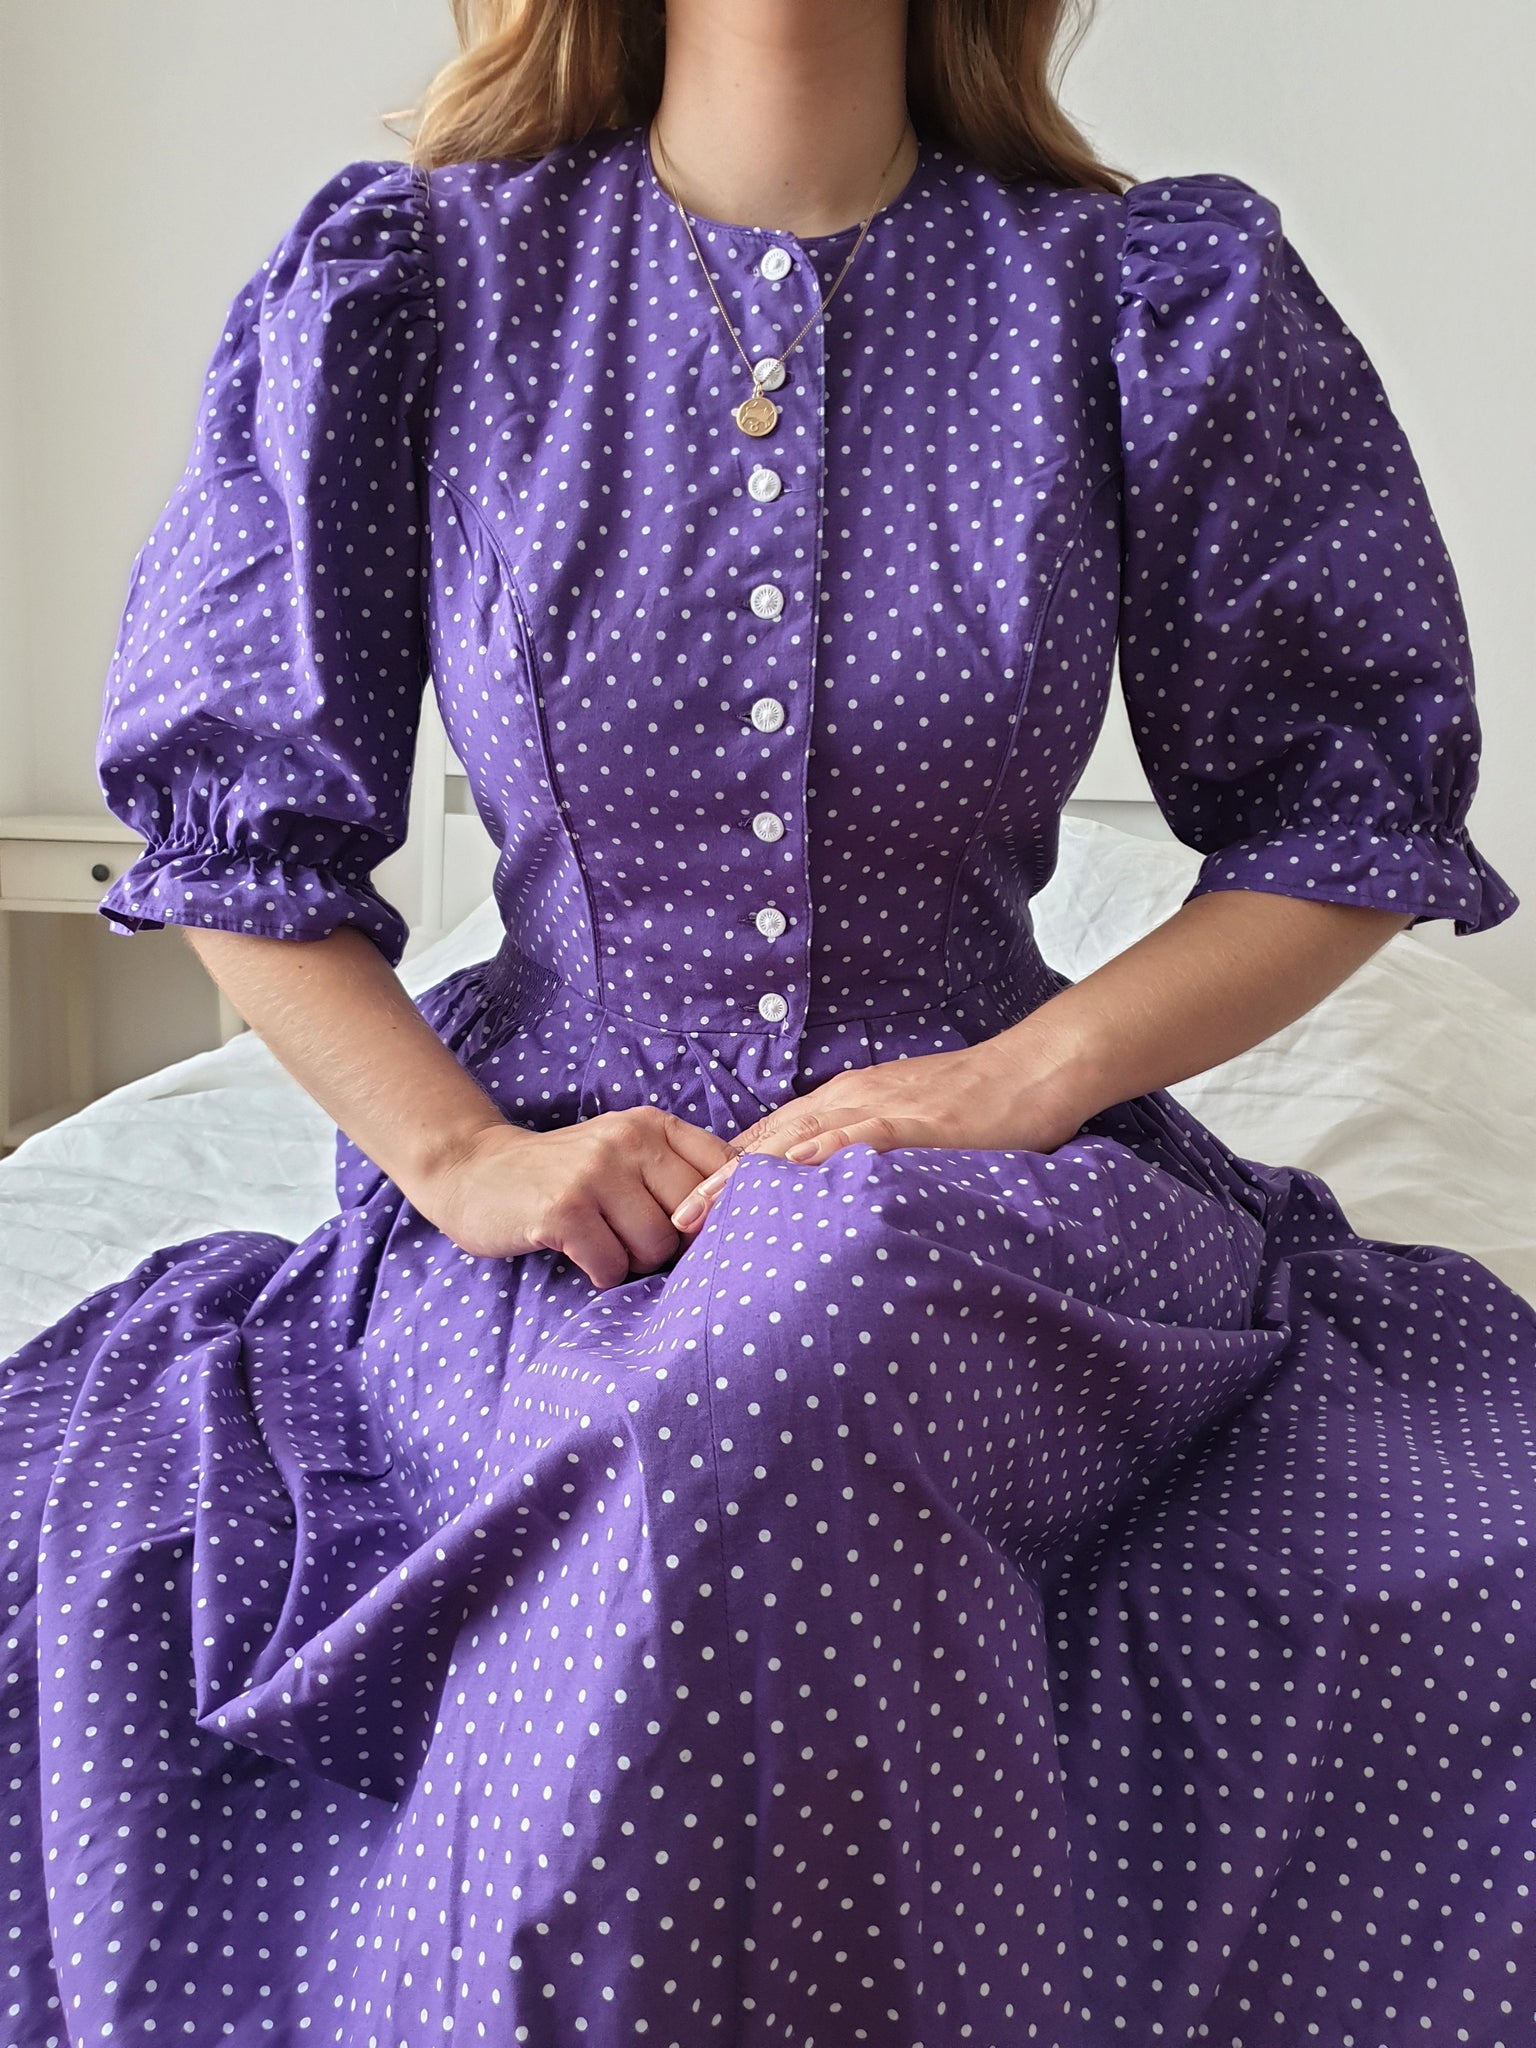  Vintage Purple Polka Dot Midi Dress